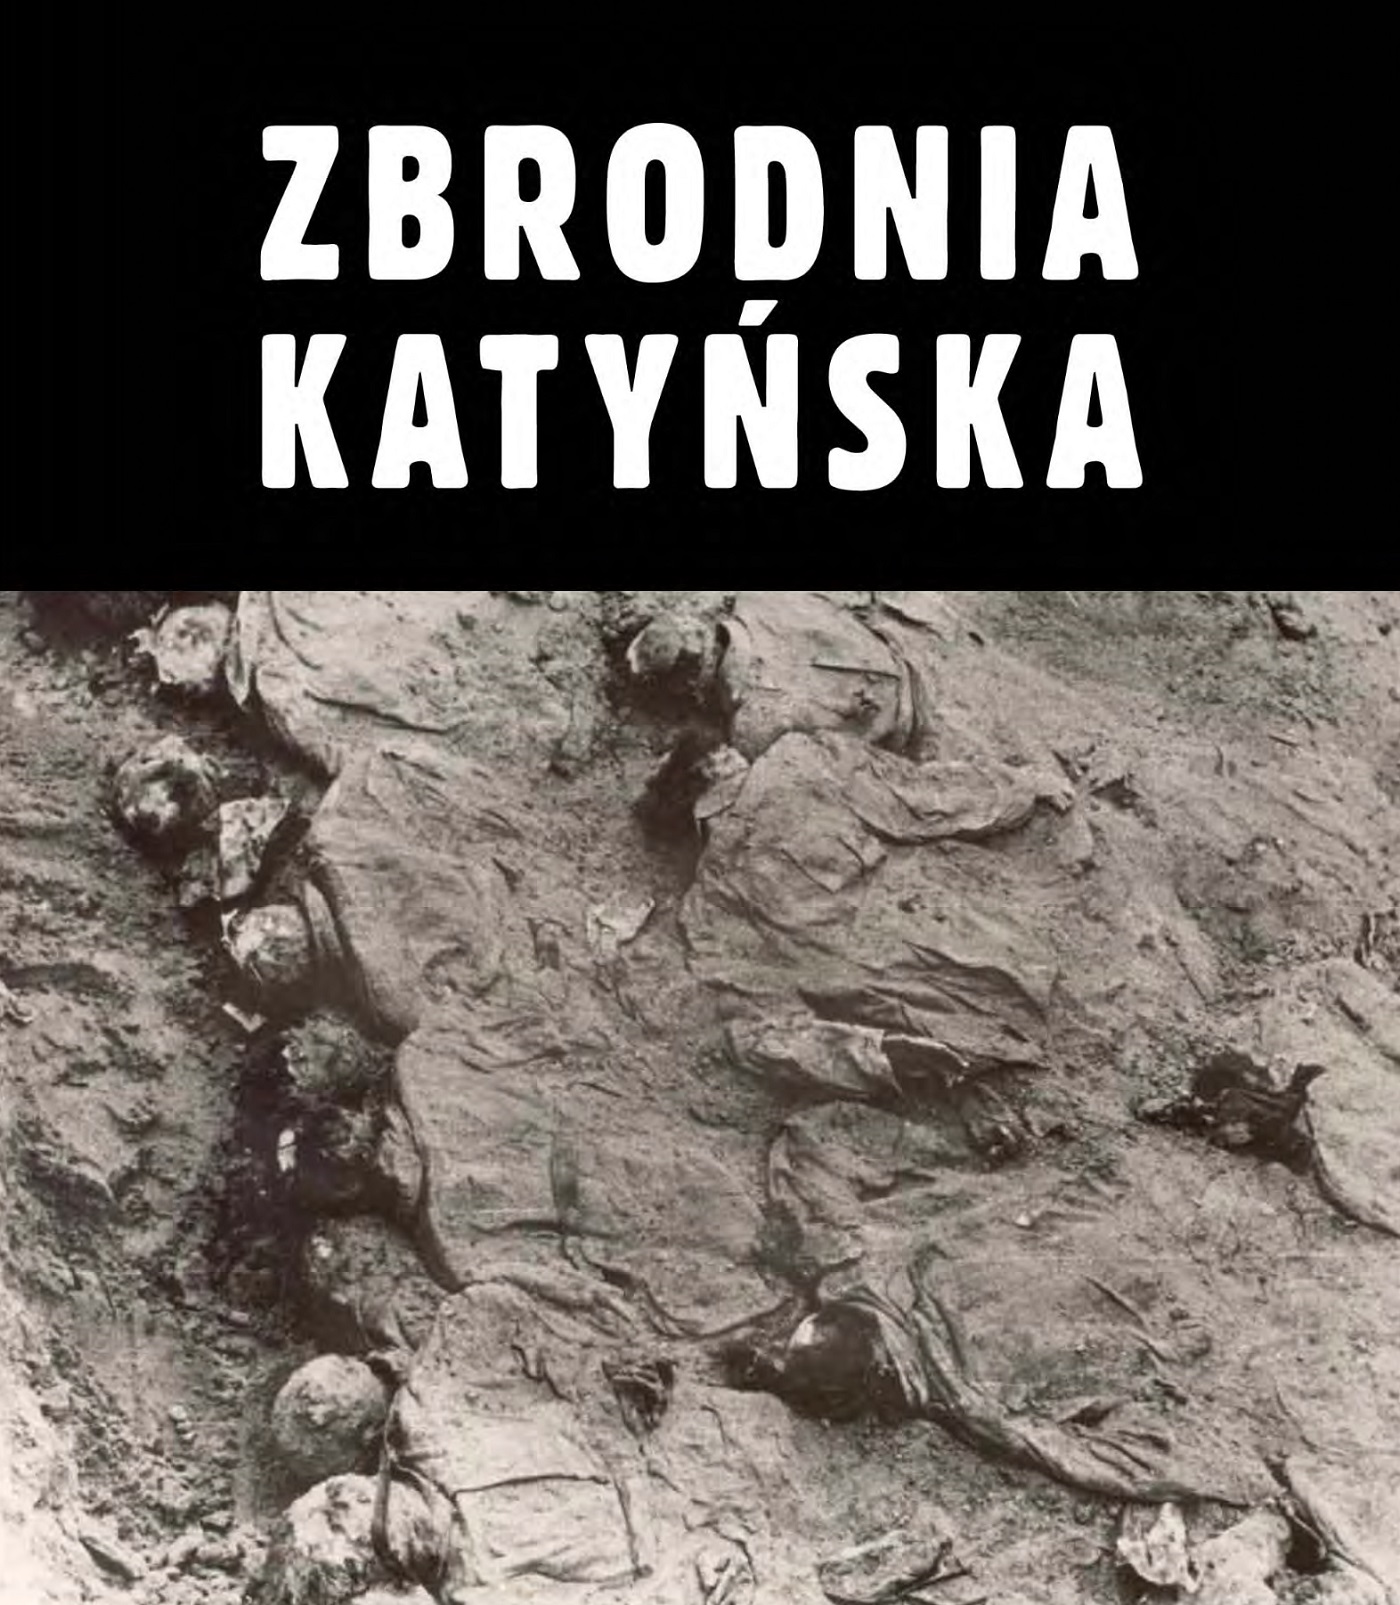 Otwarcie wystawy „Zbrodnia Katyńska” i prelekcja Marka Jończyka „Katyńska zbrodnia ludobójstwa” – Kielce, 14 marca 2023 r.